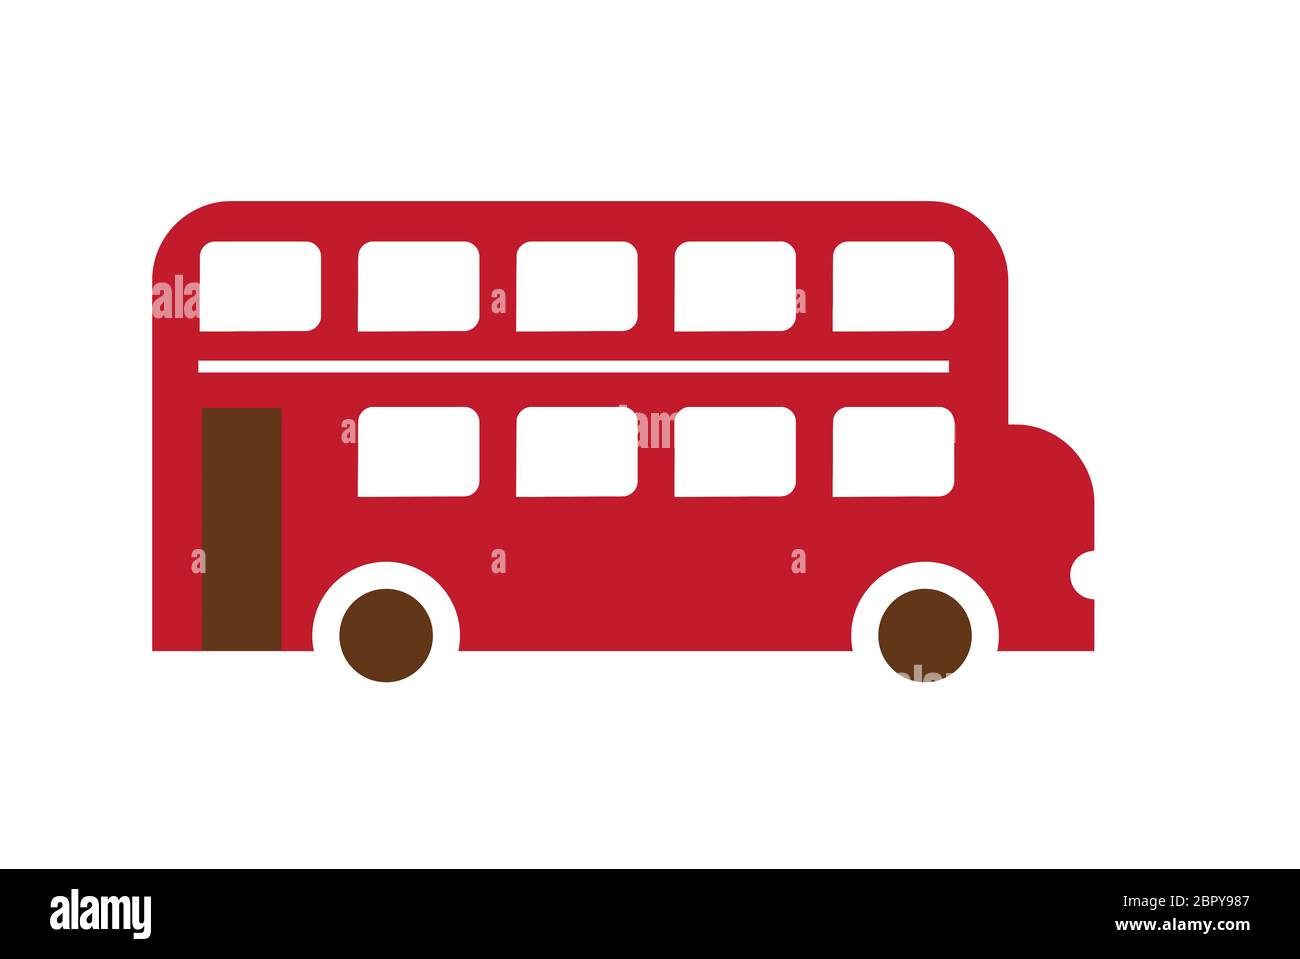 Double étage London bus touristiques transport illustration Banque D'Images